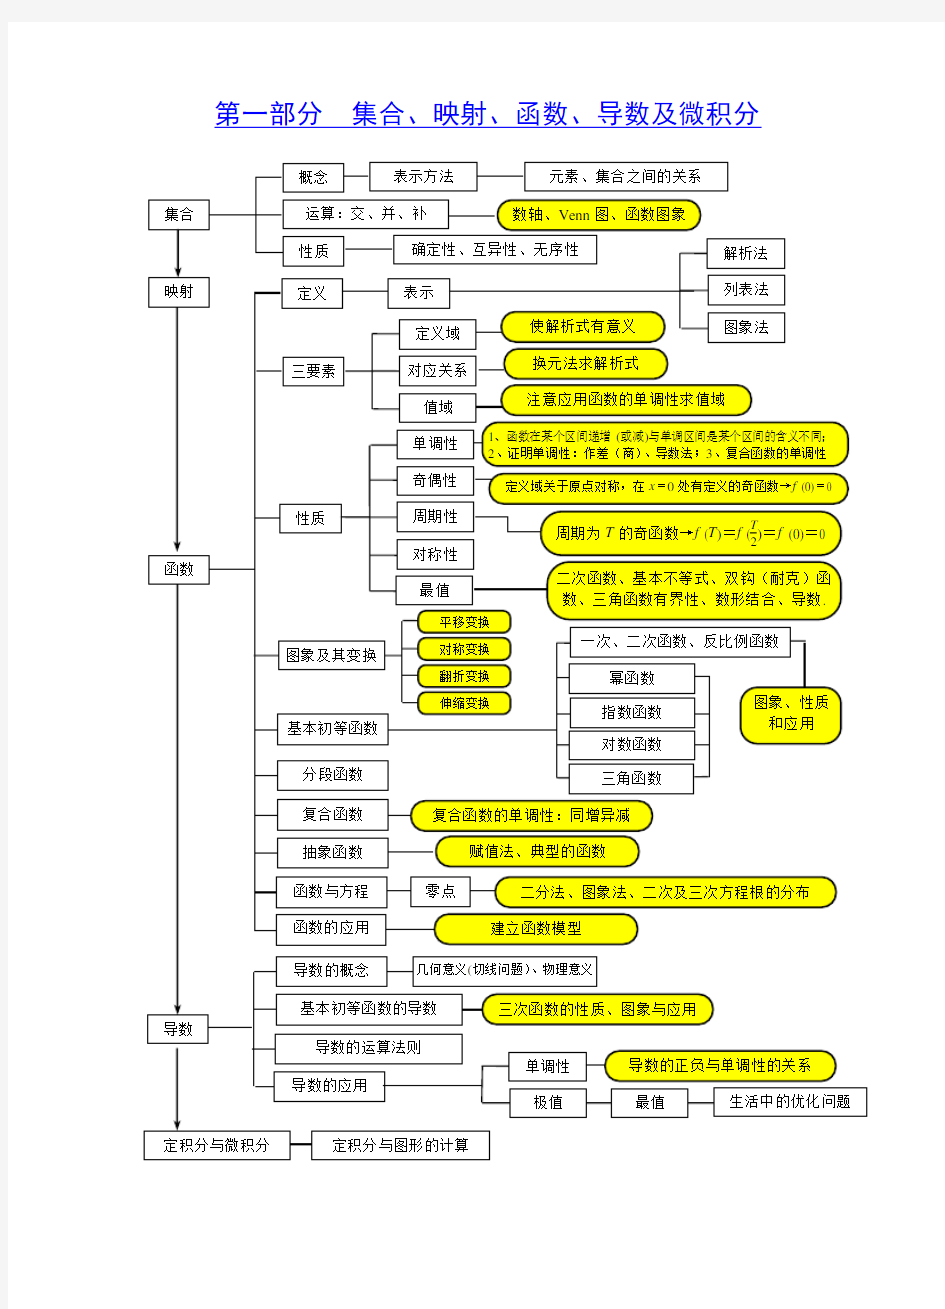 高中数学知识板块结构关系图(知识点梳理对照表)